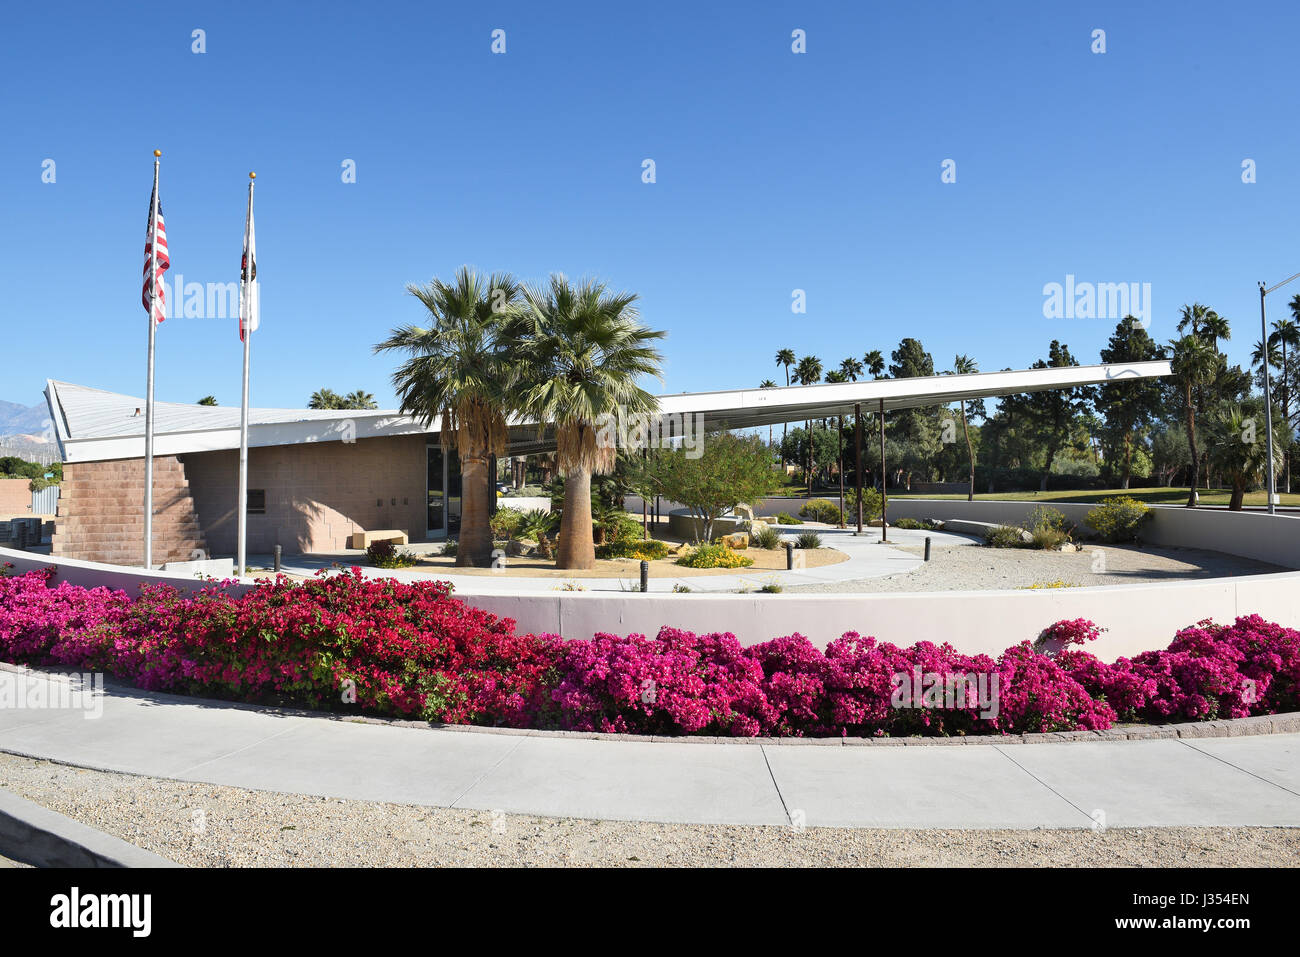 PALM Springs, CA - MARZO 24, 2017: tram Stazione di gas, Palm Springs. La stazione costruita nel 1965 serve ora come Palm Springs Visitor Center. Foto Stock